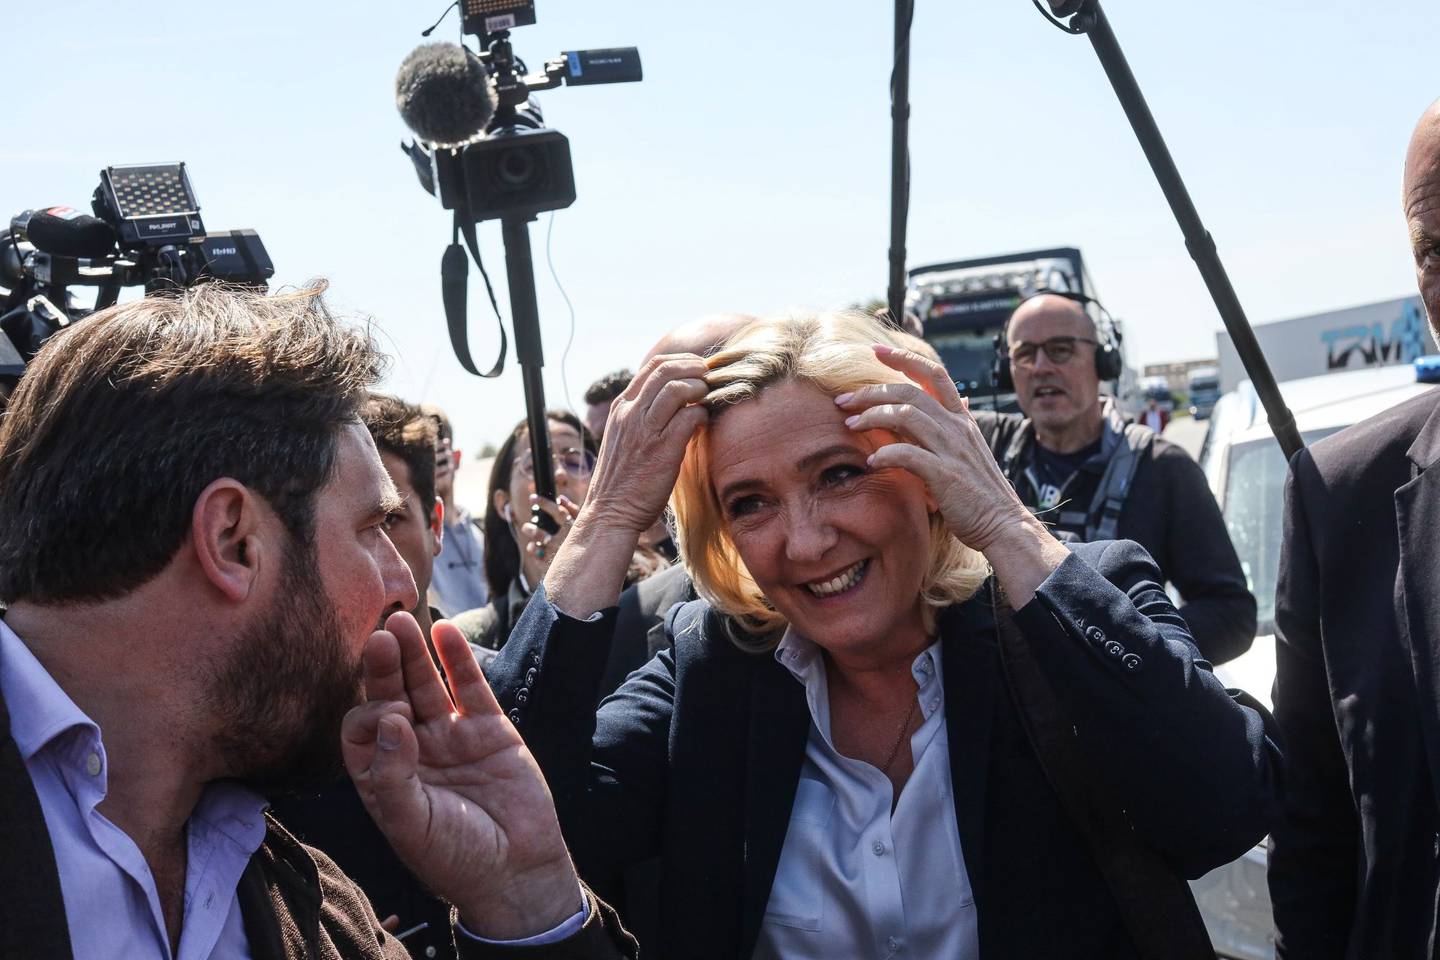 Marine Le Pen, candidata presidencial nacionalista, se prepara para hablar a los votantes durante un acto de campaña electoral en Royes, Francia, el jueves 21 de abril de 2022. A tan solo cuatro días de que los franceses decidan entre dos visiones radicalmente diferentes para su futuro, los sondeos de opinión muestran que todavía hay muchos votantes indecisos.